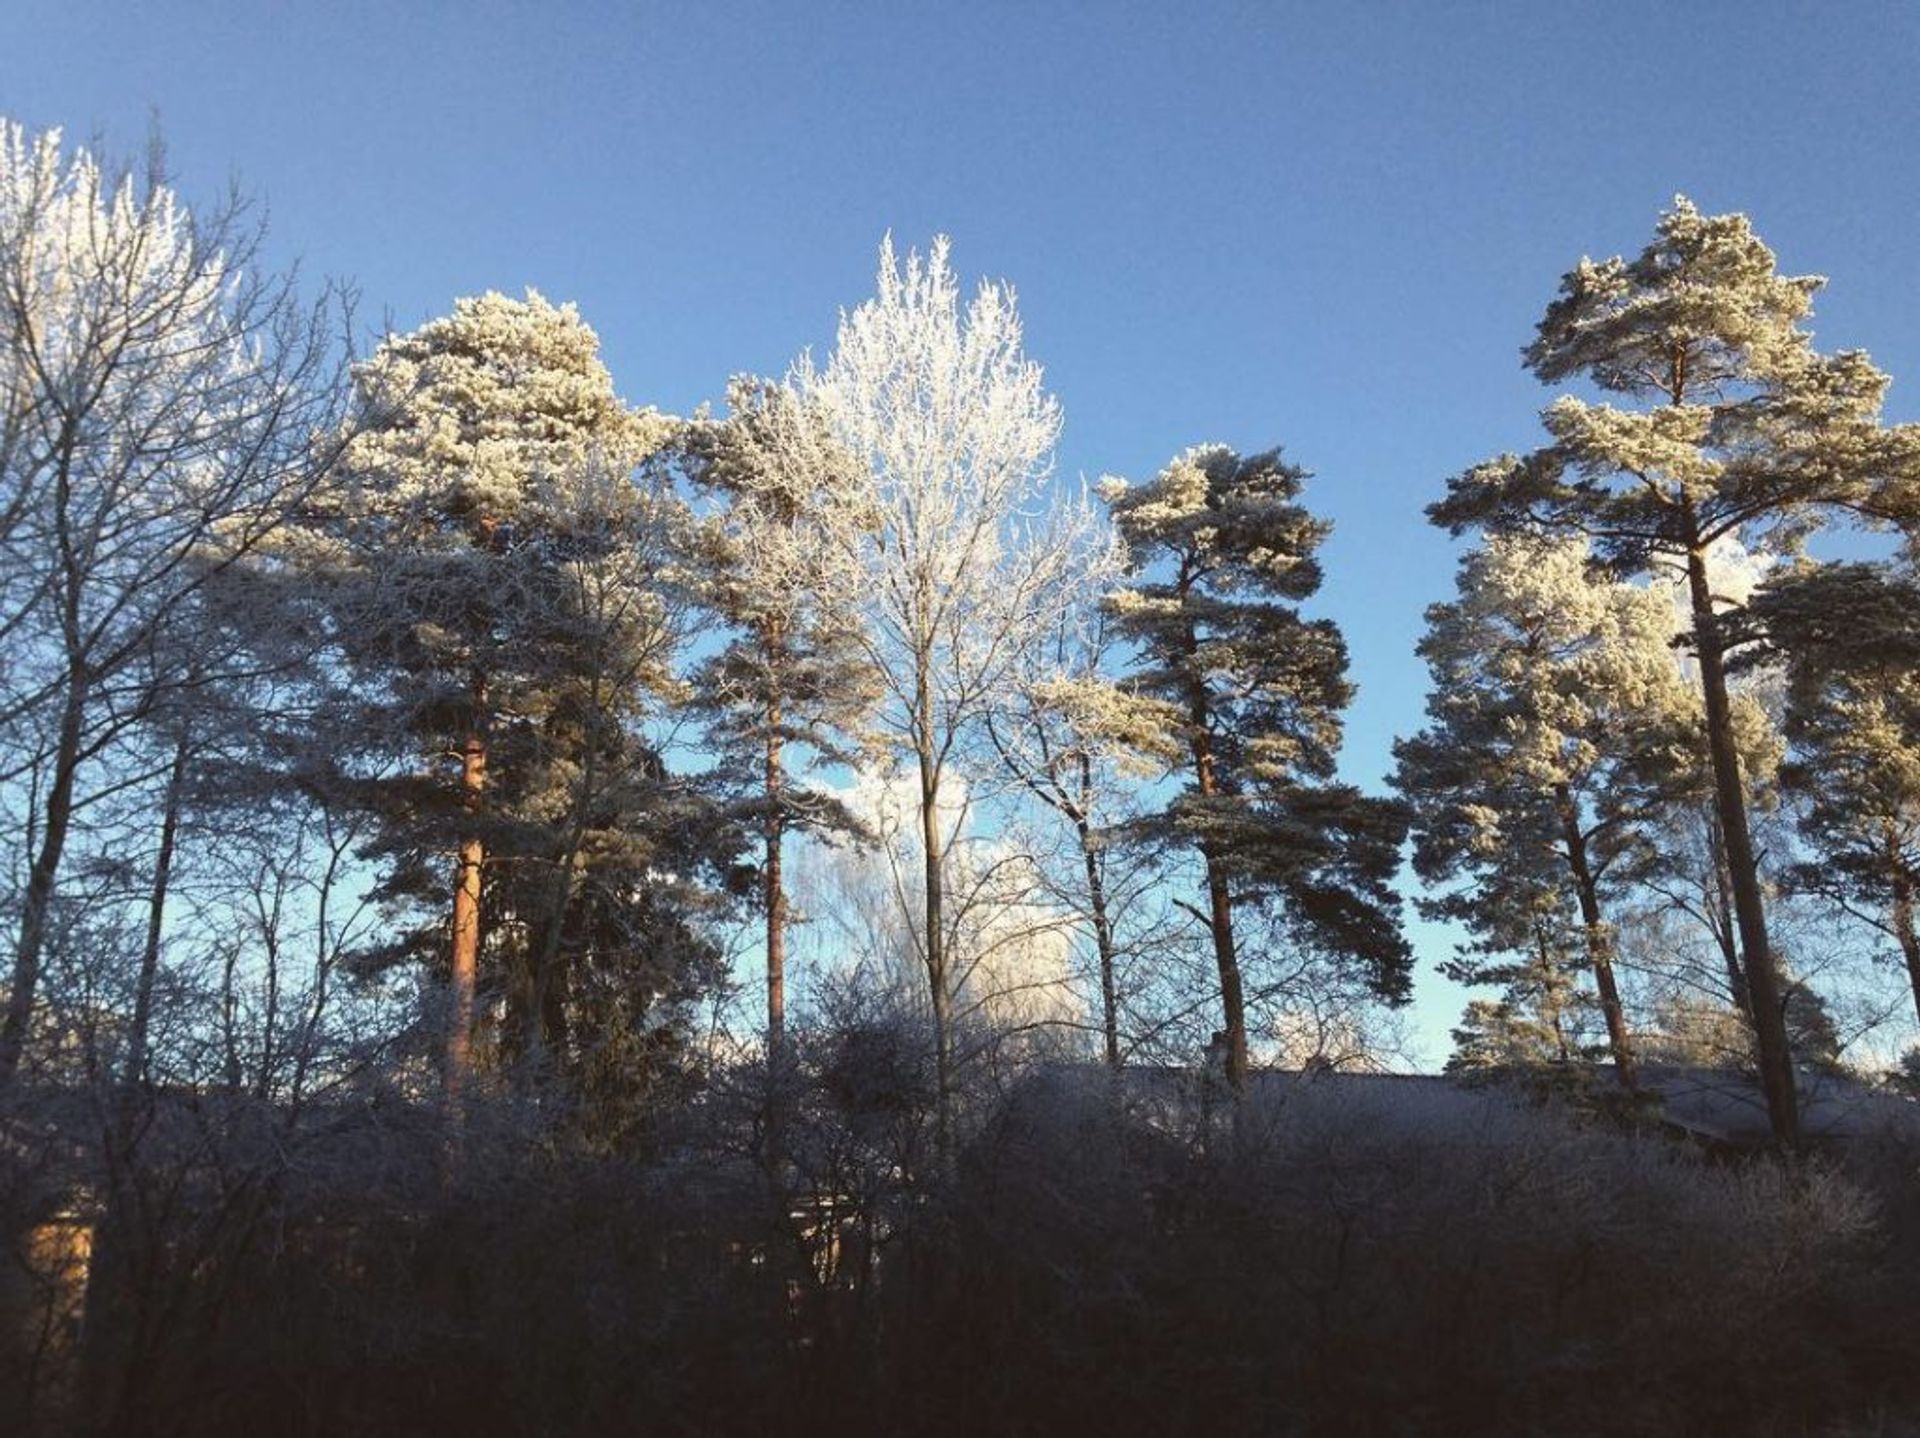 Snowy trees against blue sky 